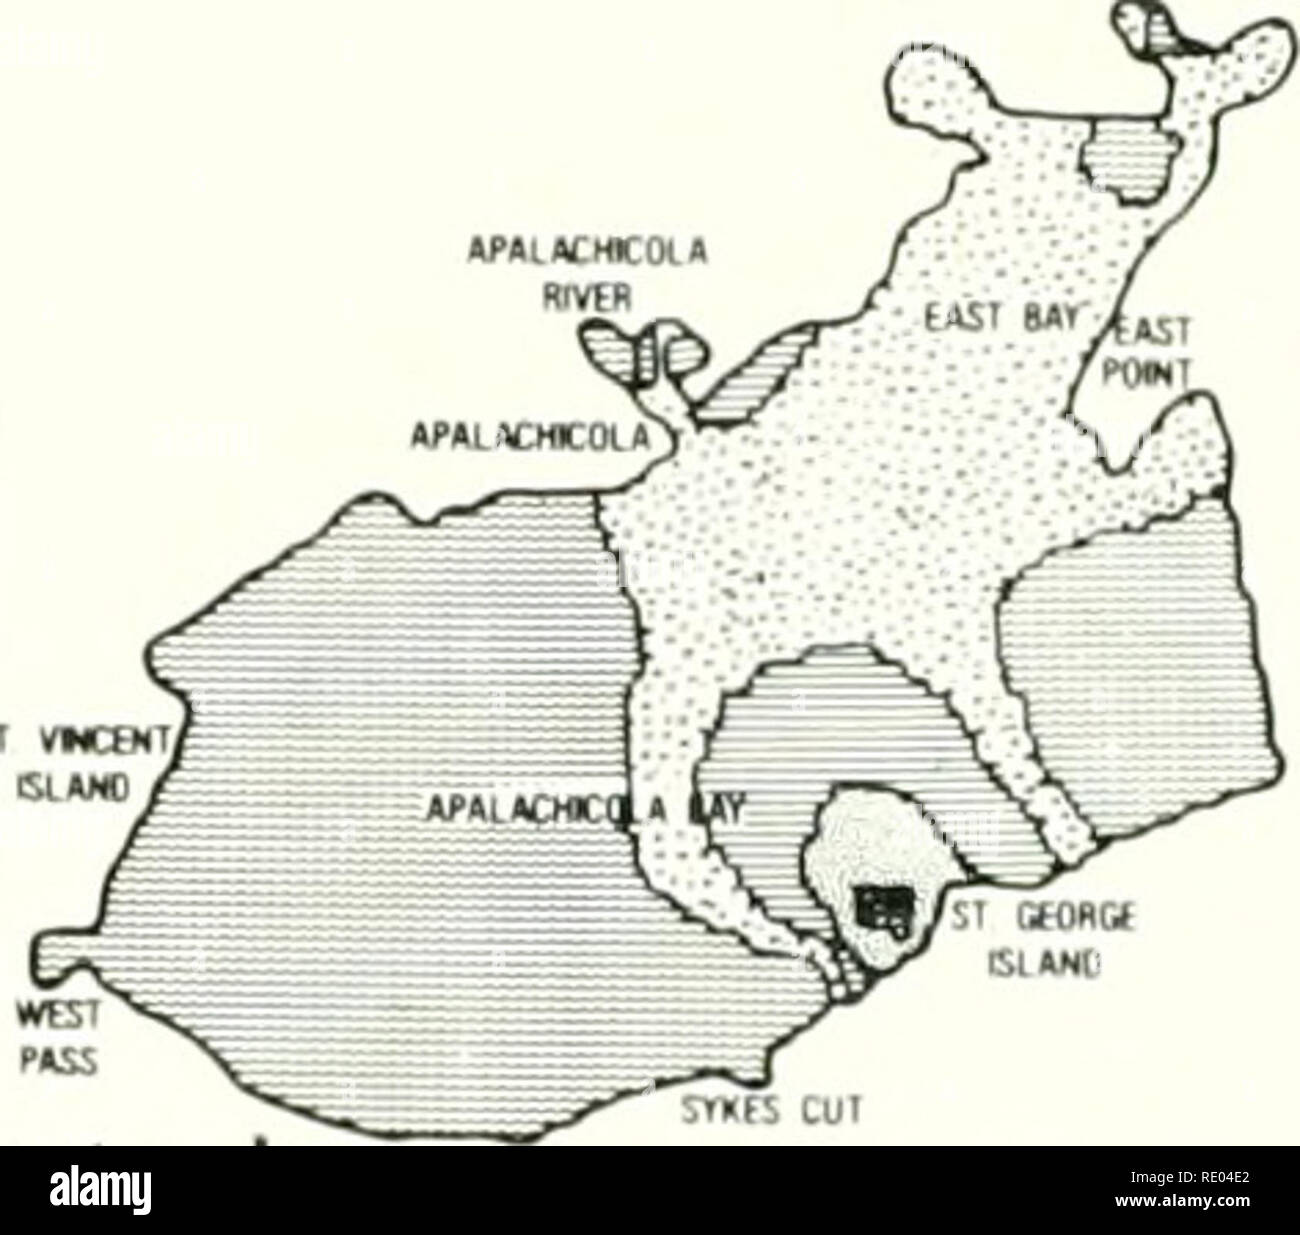 . L'écologie de la Baie d'Apalachicola système : un profil de l'estuaire. Écologie estuarienne -- Baie d'Apalachicola en Floride ; la conservation des zones estuariennes -- en Floride. (KtobtT UVtR / (W ! X'/uf iil *Â" / ^ 1 Februar&gt ; -^-&gt;JE ! ?U fc :. aoftK !"j"P *DÂ":oiÂ" &gt ;^ Â"..,Â"Â"oi&gt ;^ ^3, -,T V &"Â"&gt ;.R7V^ f7 IXM CNW/ x.,^J^ ^^^^^WR' S^ y" f"Â£S &gt ;. ^ - . ^-^^»^ r, r avril 'W Â"p (LACHCOl* // "x/ AOINT APWAtMKOlAy* RIVEH J ^^ Y r- rtS SI VWCJN ^^^^^r v HCw awV Â"sr un ^^^^' Mars -^^ ^-wscu, Â"P*lÂ"CMtOLÂ RlVtH" ["E ST 8Ar/^5, 4P"l Â"CmCI)L ?&gt ; J VJ^ rtctm 5T/- '^ » /V Q sl*Â"l Banque D'Images